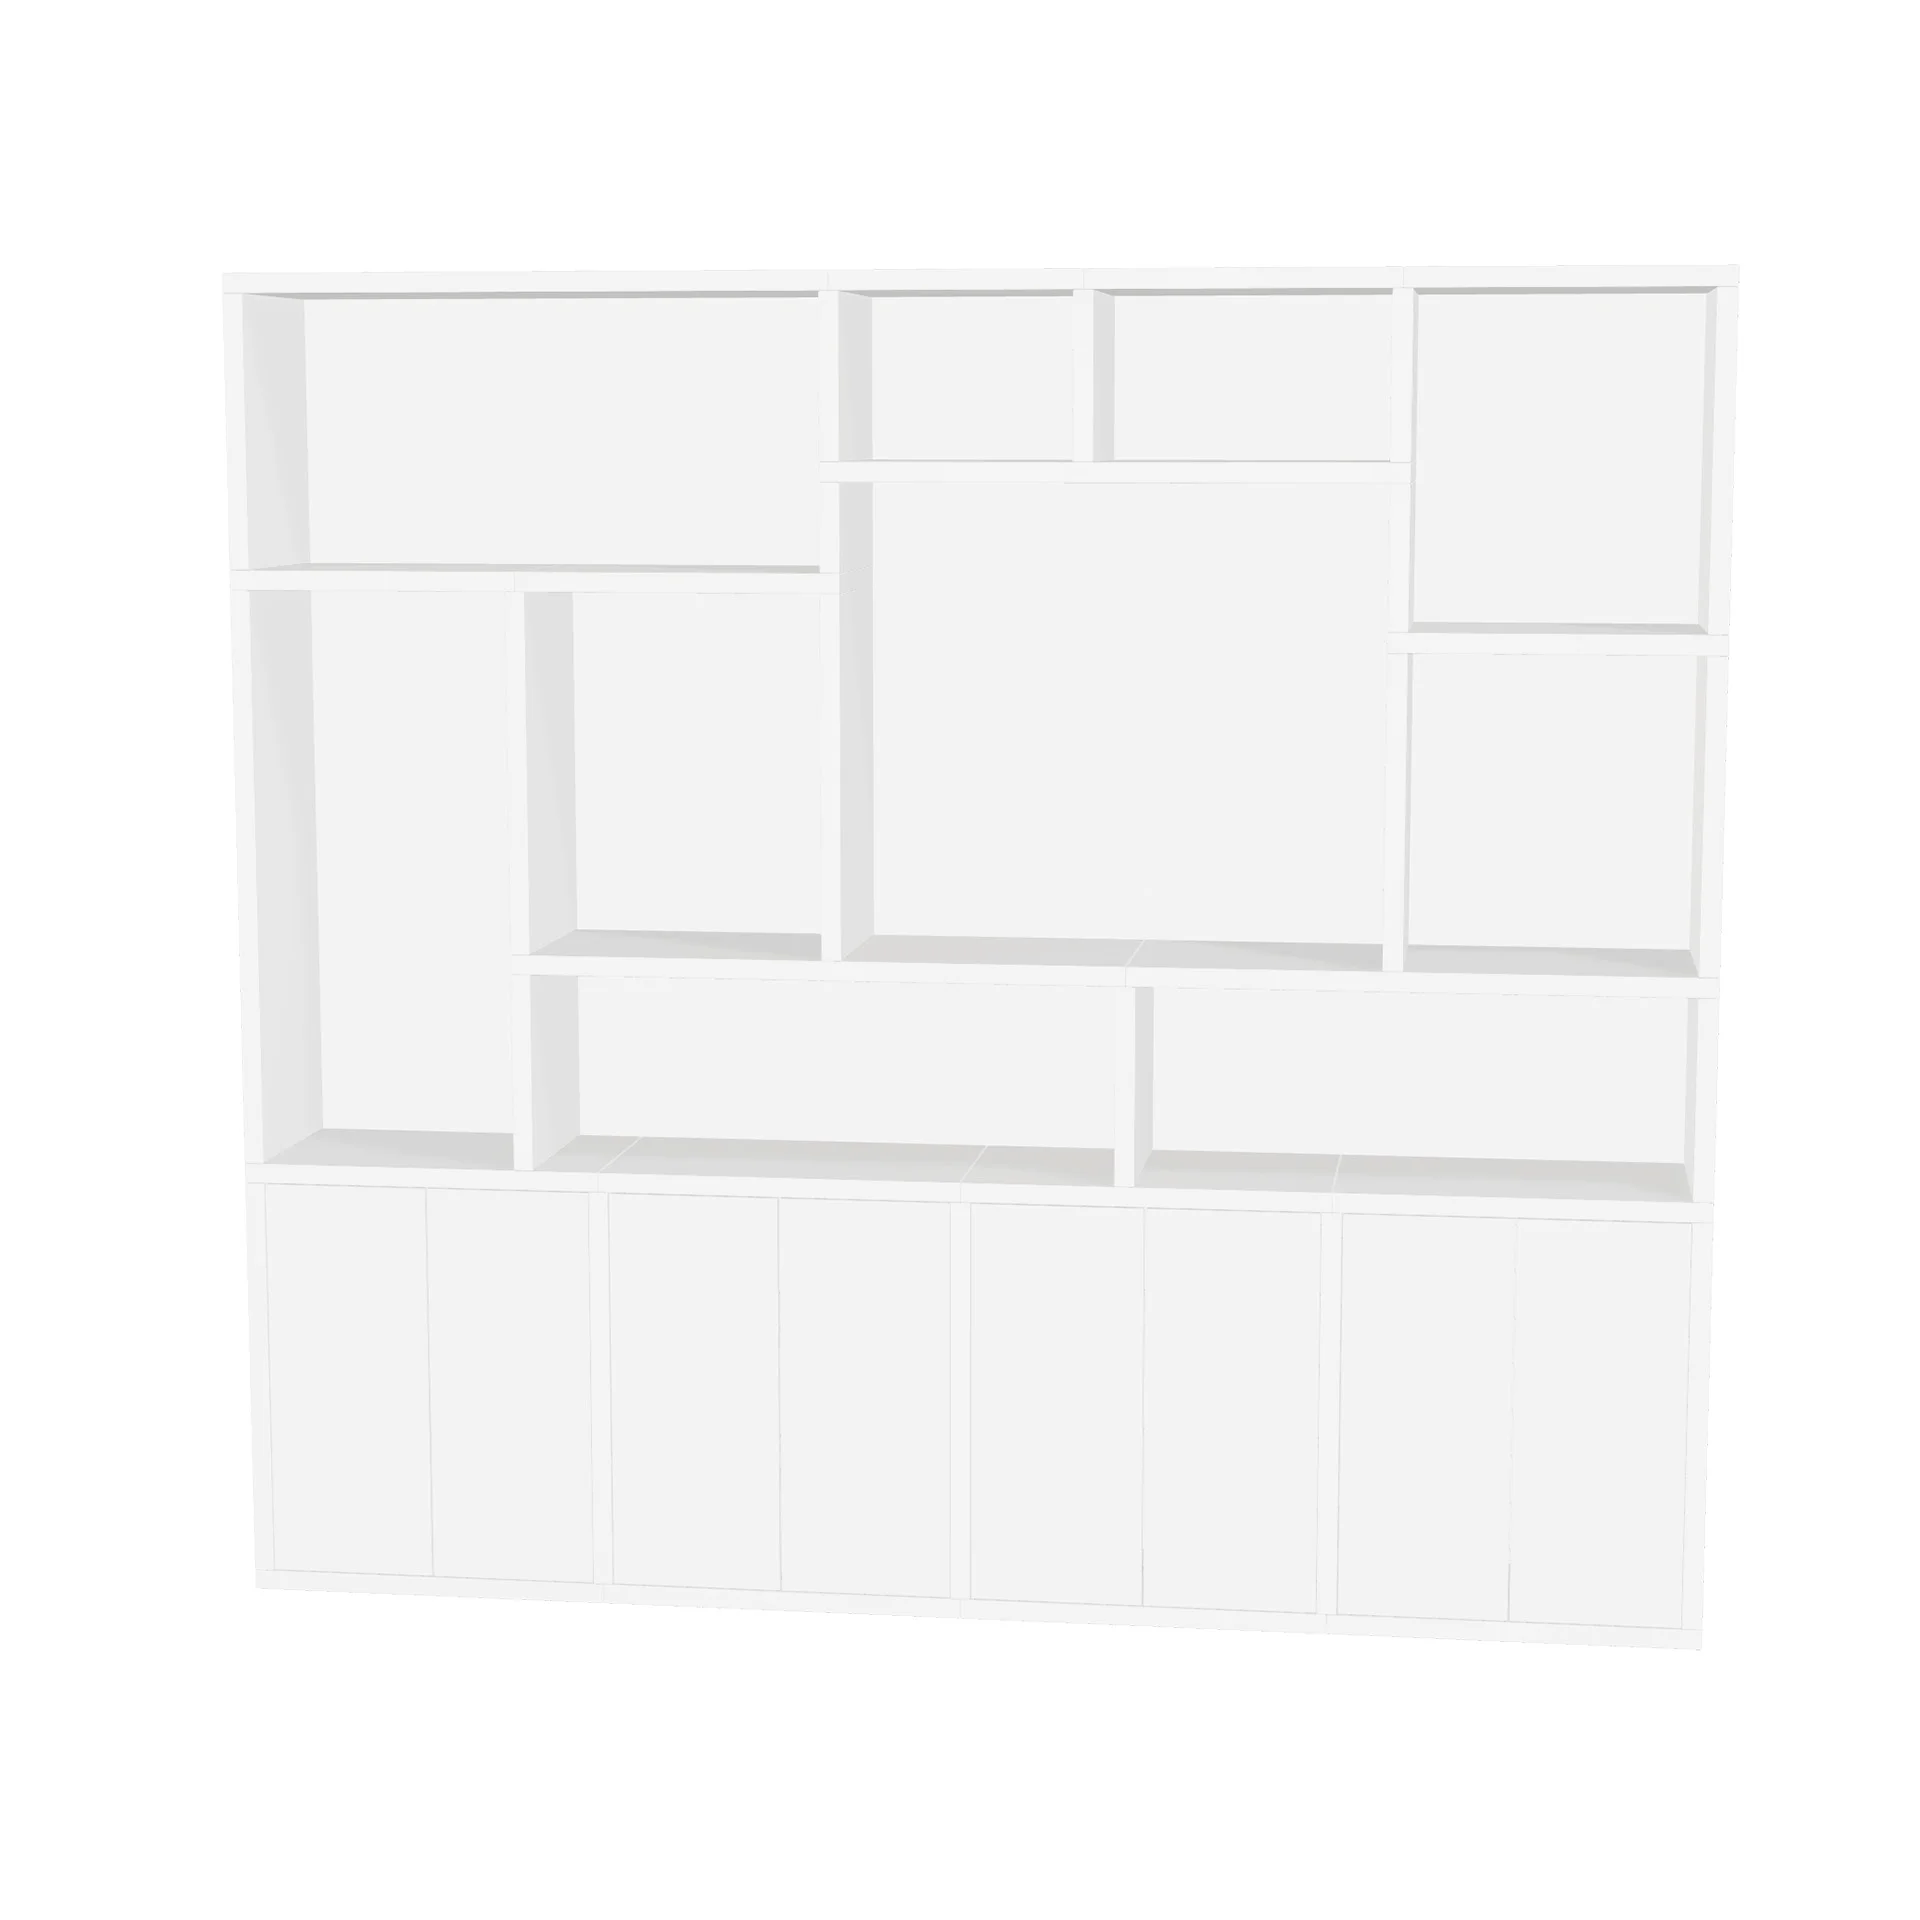 TSFC014 in white furniture board